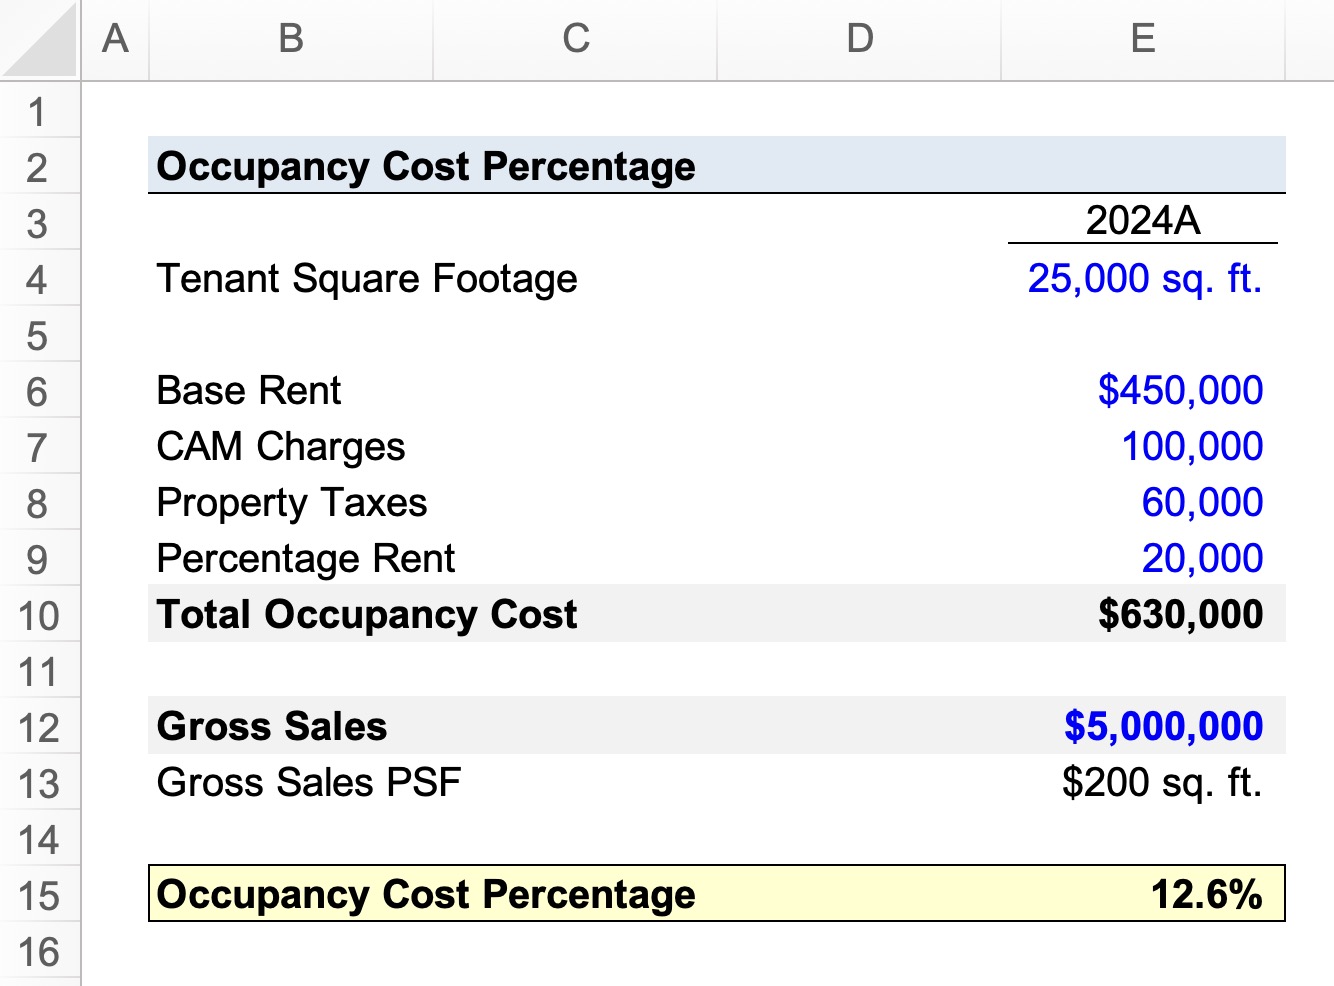 Porcentaje del costo de ocupación | Fórmula + Calculadora